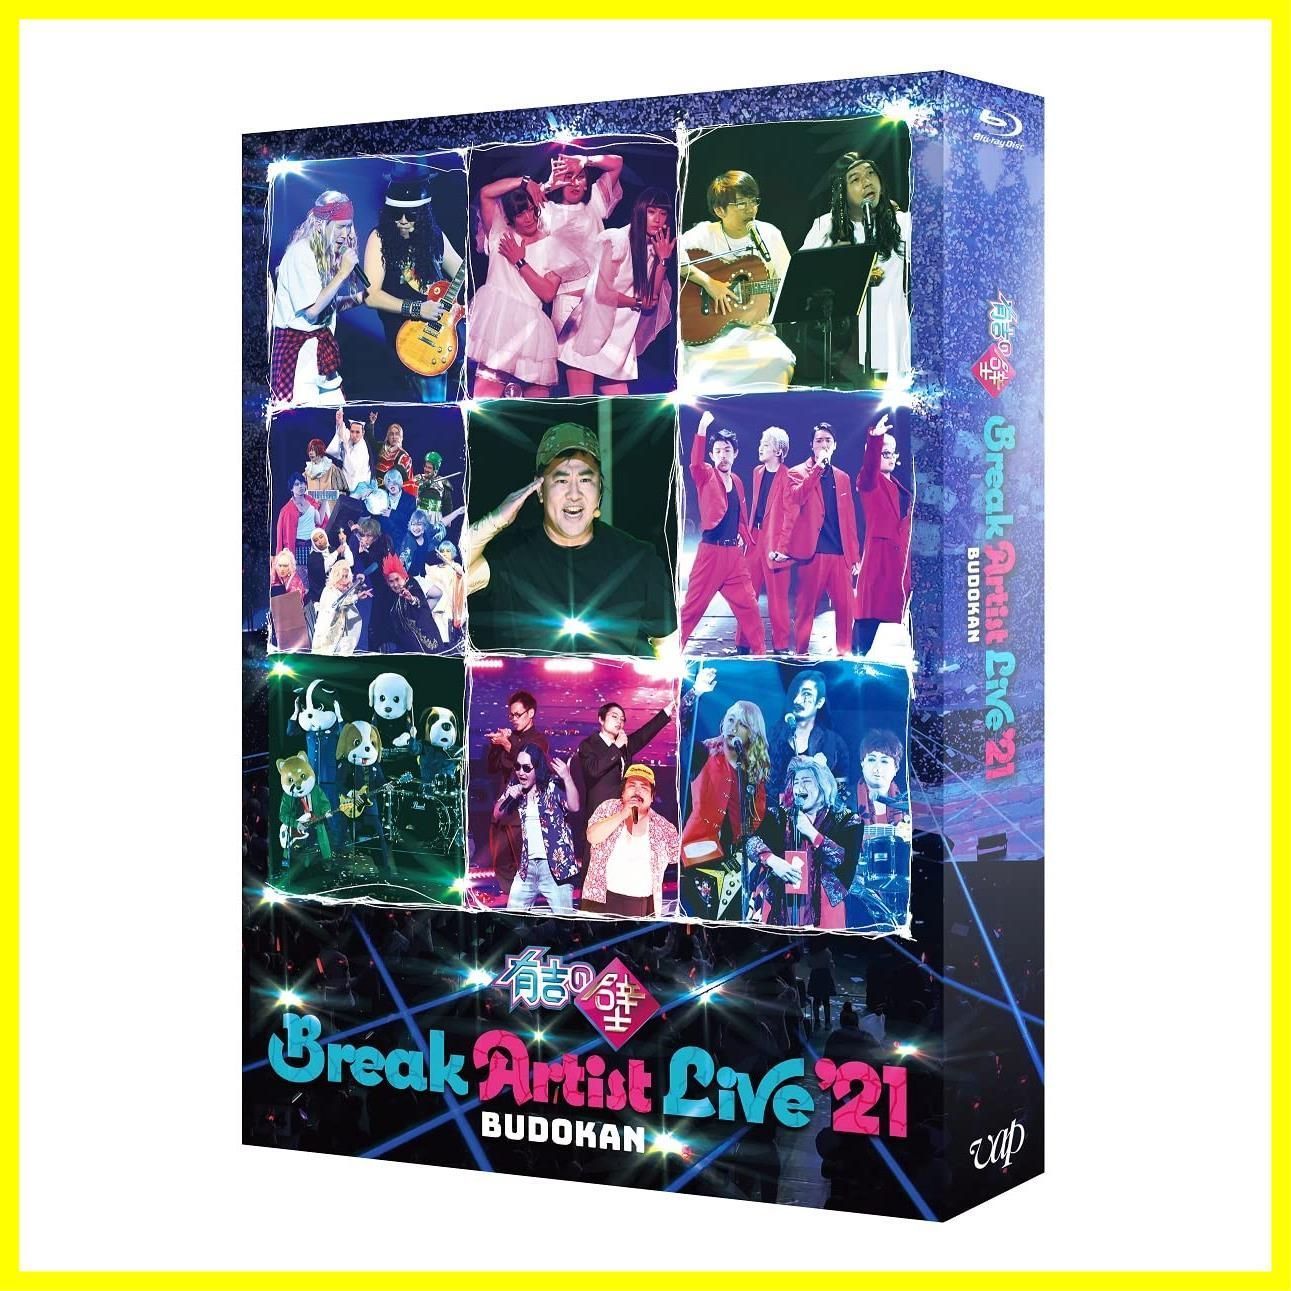 新品未開封】有吉の壁 Break Artist Live '21 BUDOKAN 豪華版(Blu-ray 